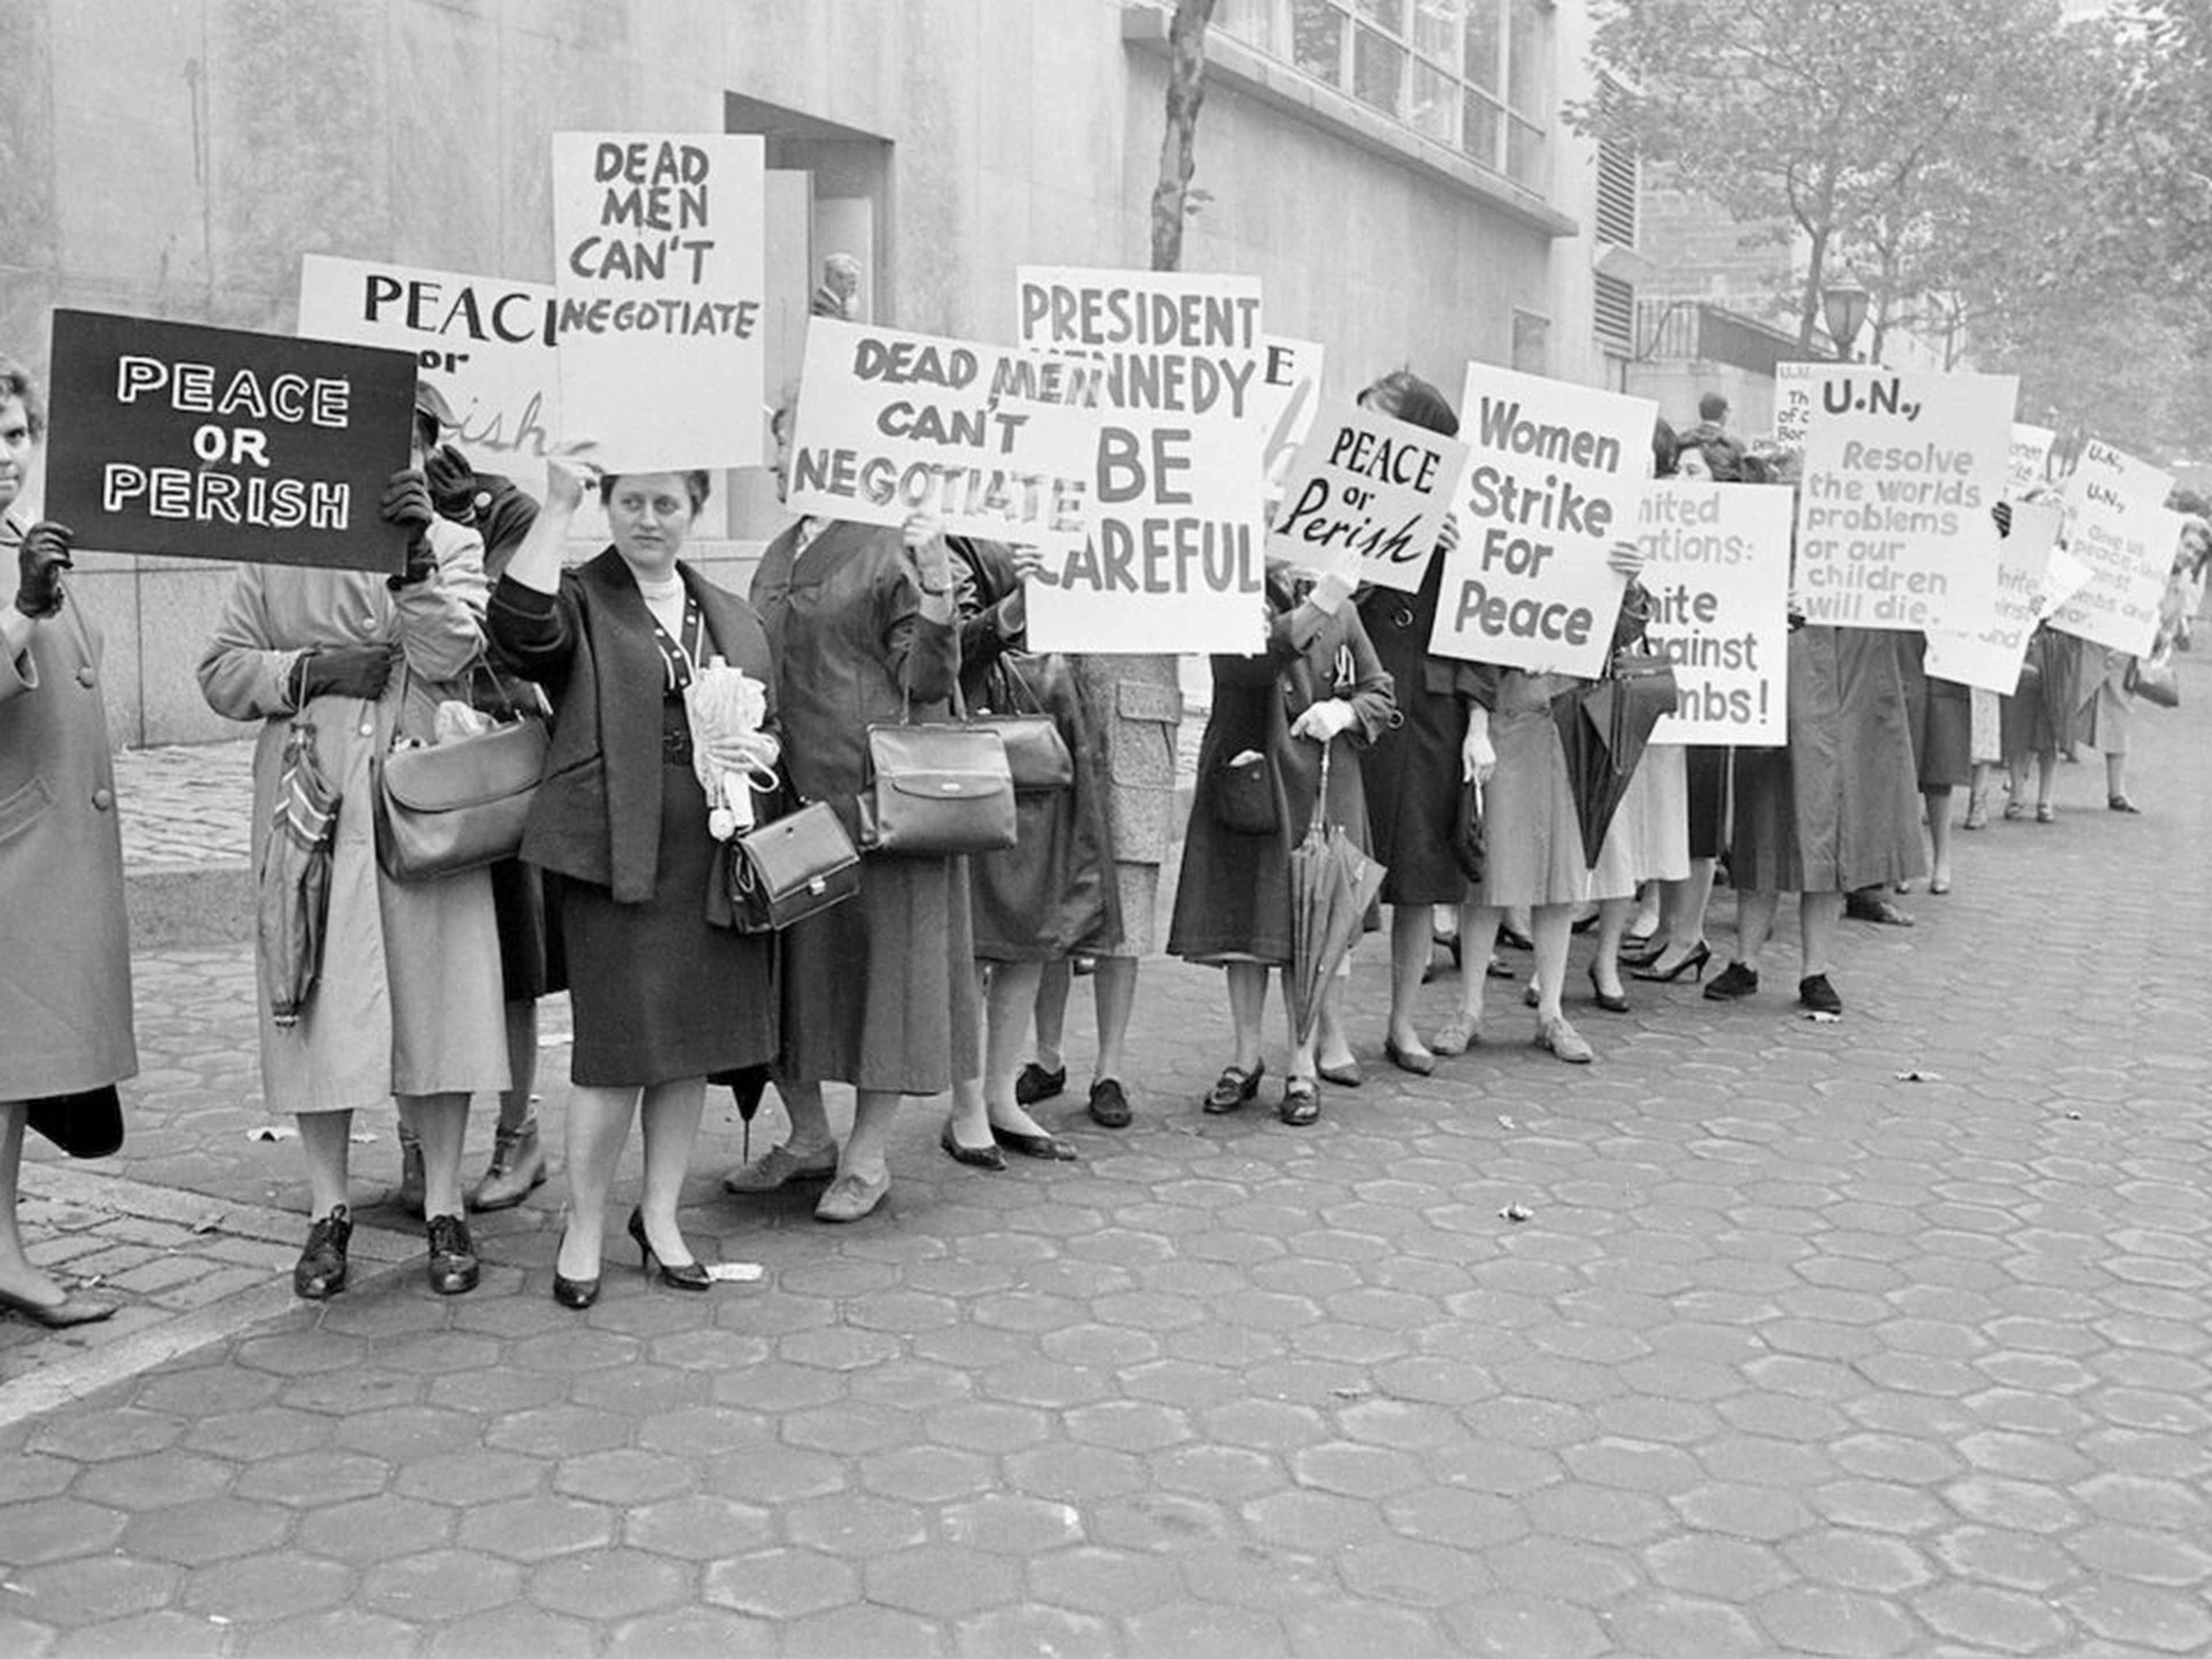 Manifestantes representantes de la organización 'Las mujeres protestan por la paz', a las afueras de las Naciones Unidas en Nueva York, el 23 de octubre de 1962.